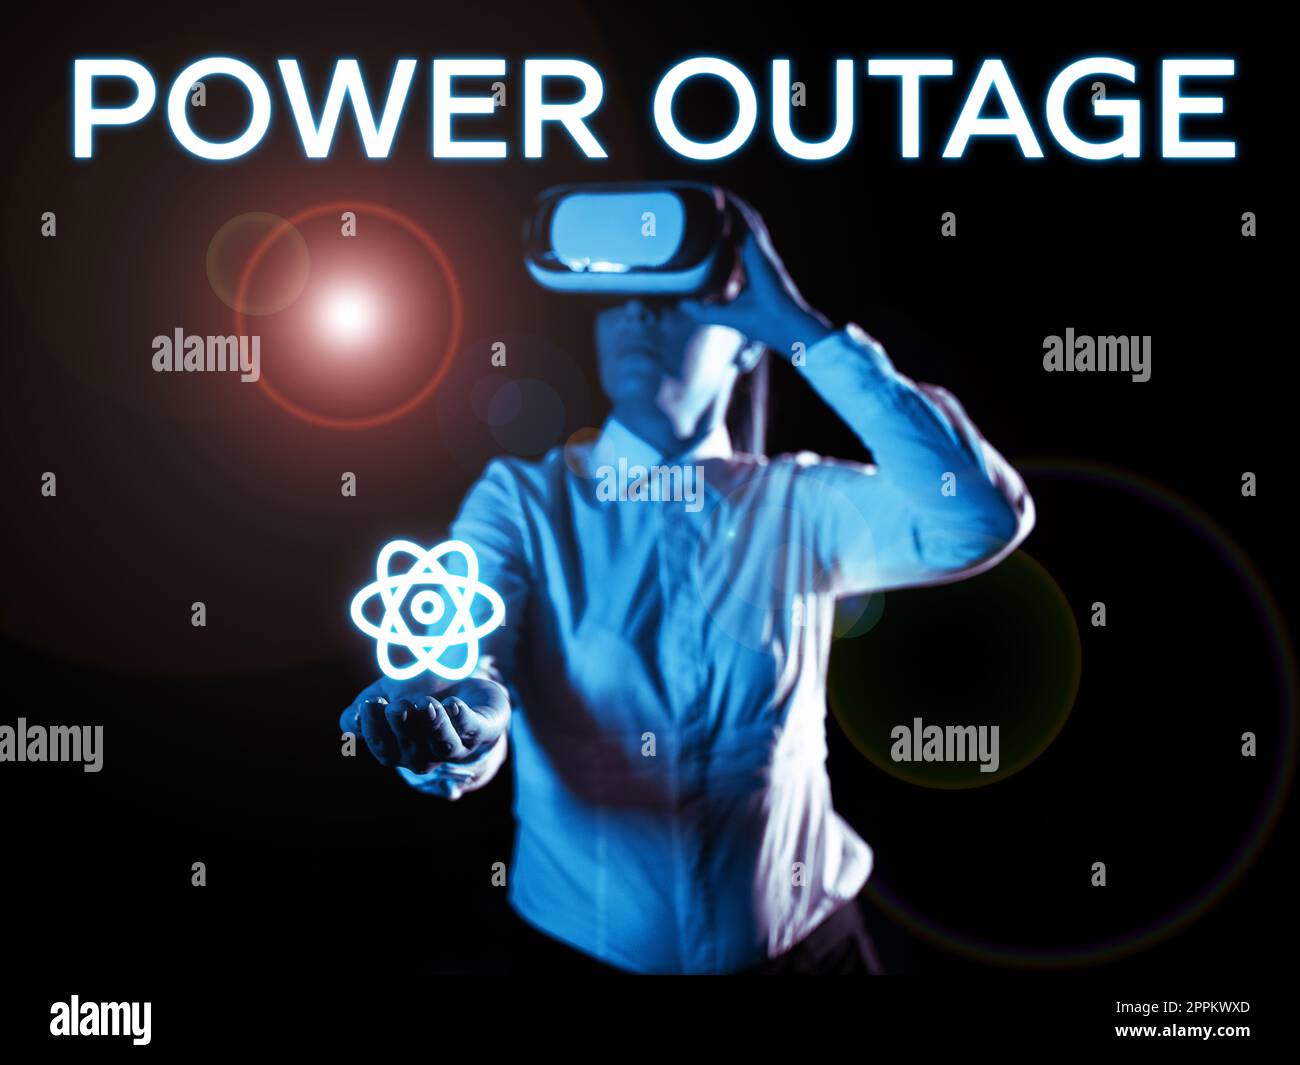 Affiche manuscrite Power Outage. Approche commerciale capacité à influencer les pairs pour atteindre les objectifs Banque D'Images